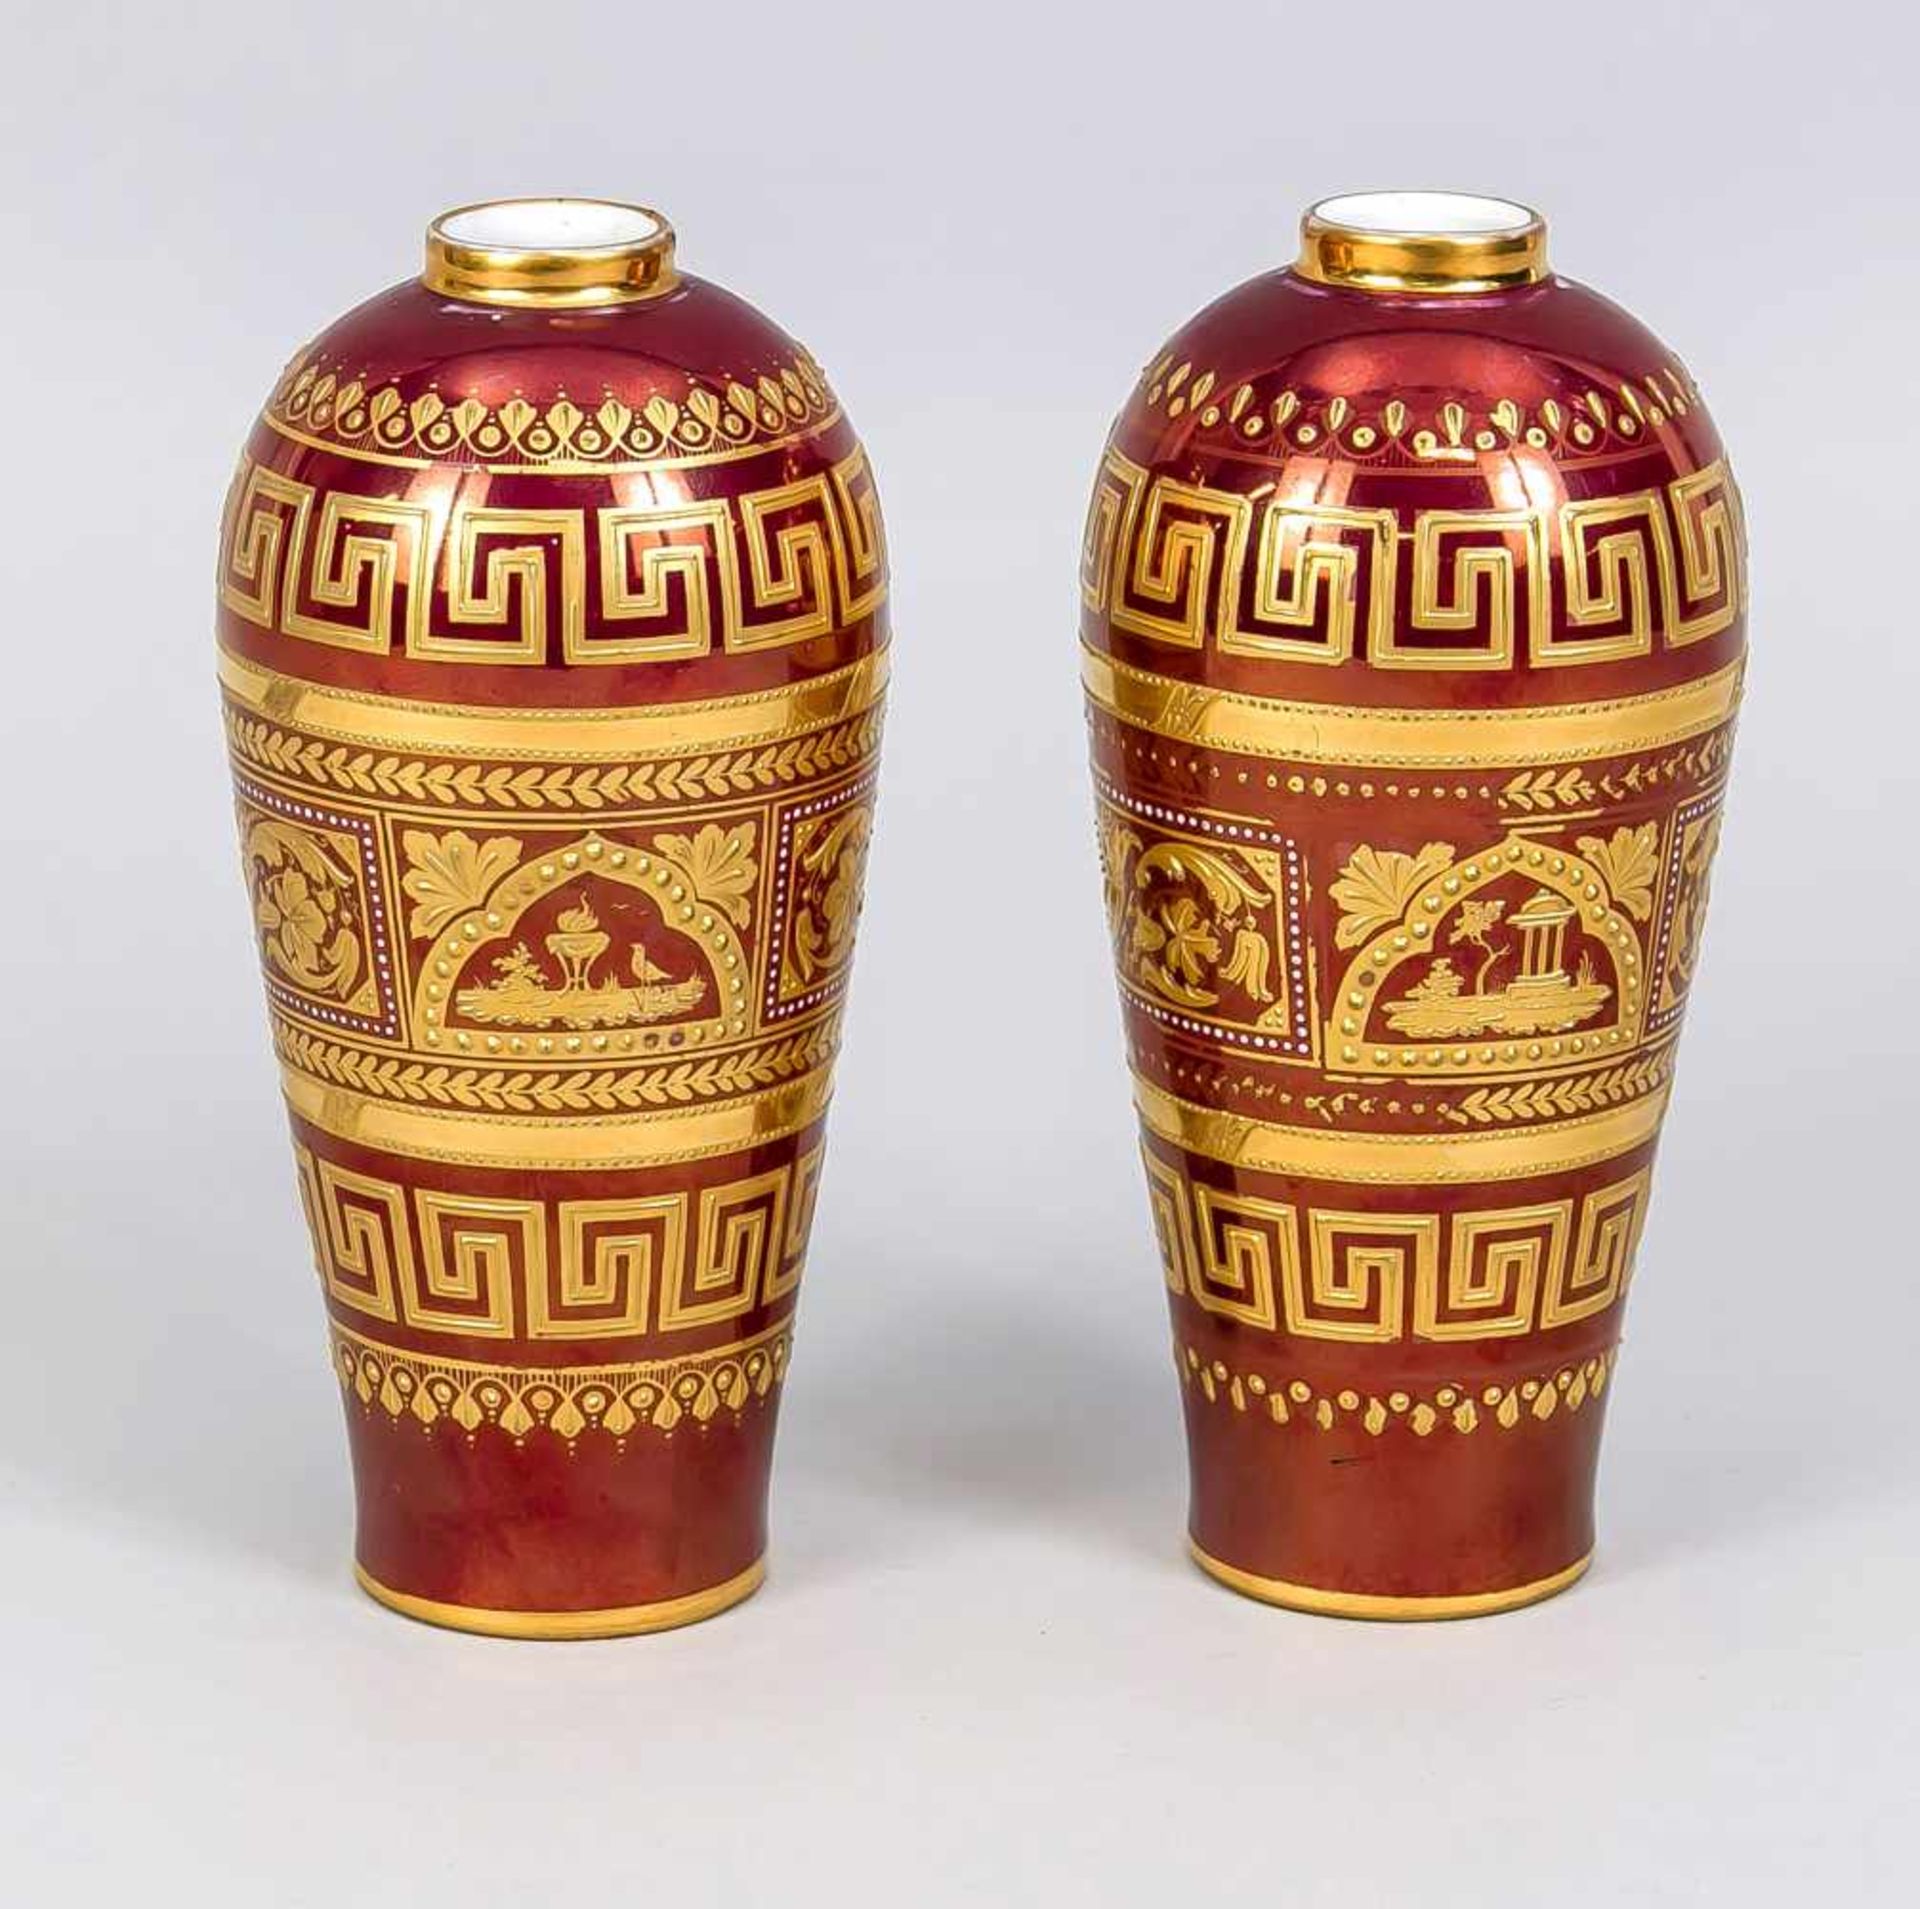 Paar Vasen, Thüringen, Ende 19. Jh., in Wiener Manier, frontseitig Medaillon mit - Bild 2 aus 2